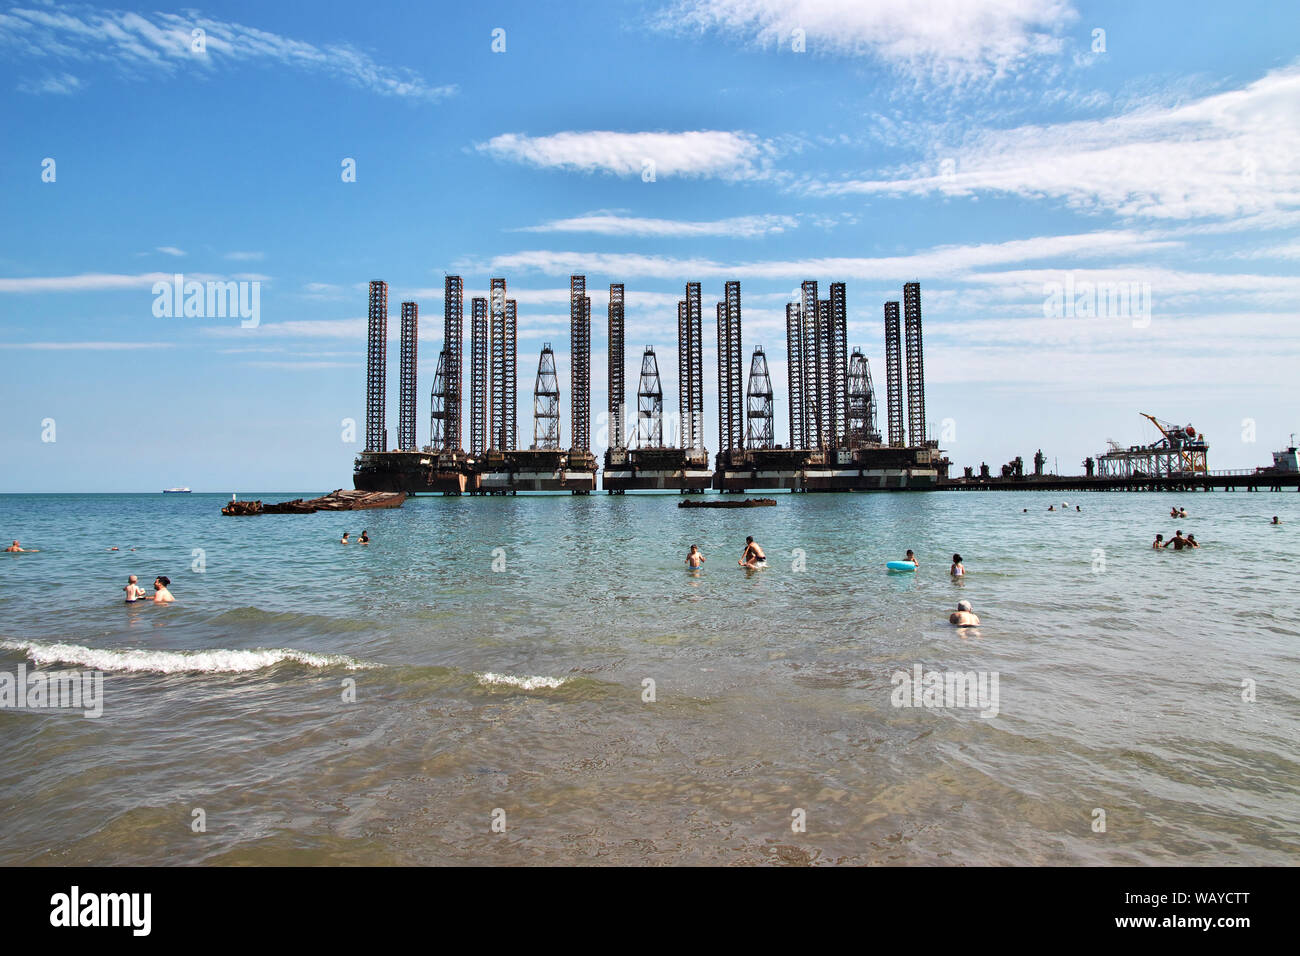 Caspian beach / Azerbaijan - 13 Jul 2013: The oil rig in Azerbaijan, Caspian sea Stock Photo